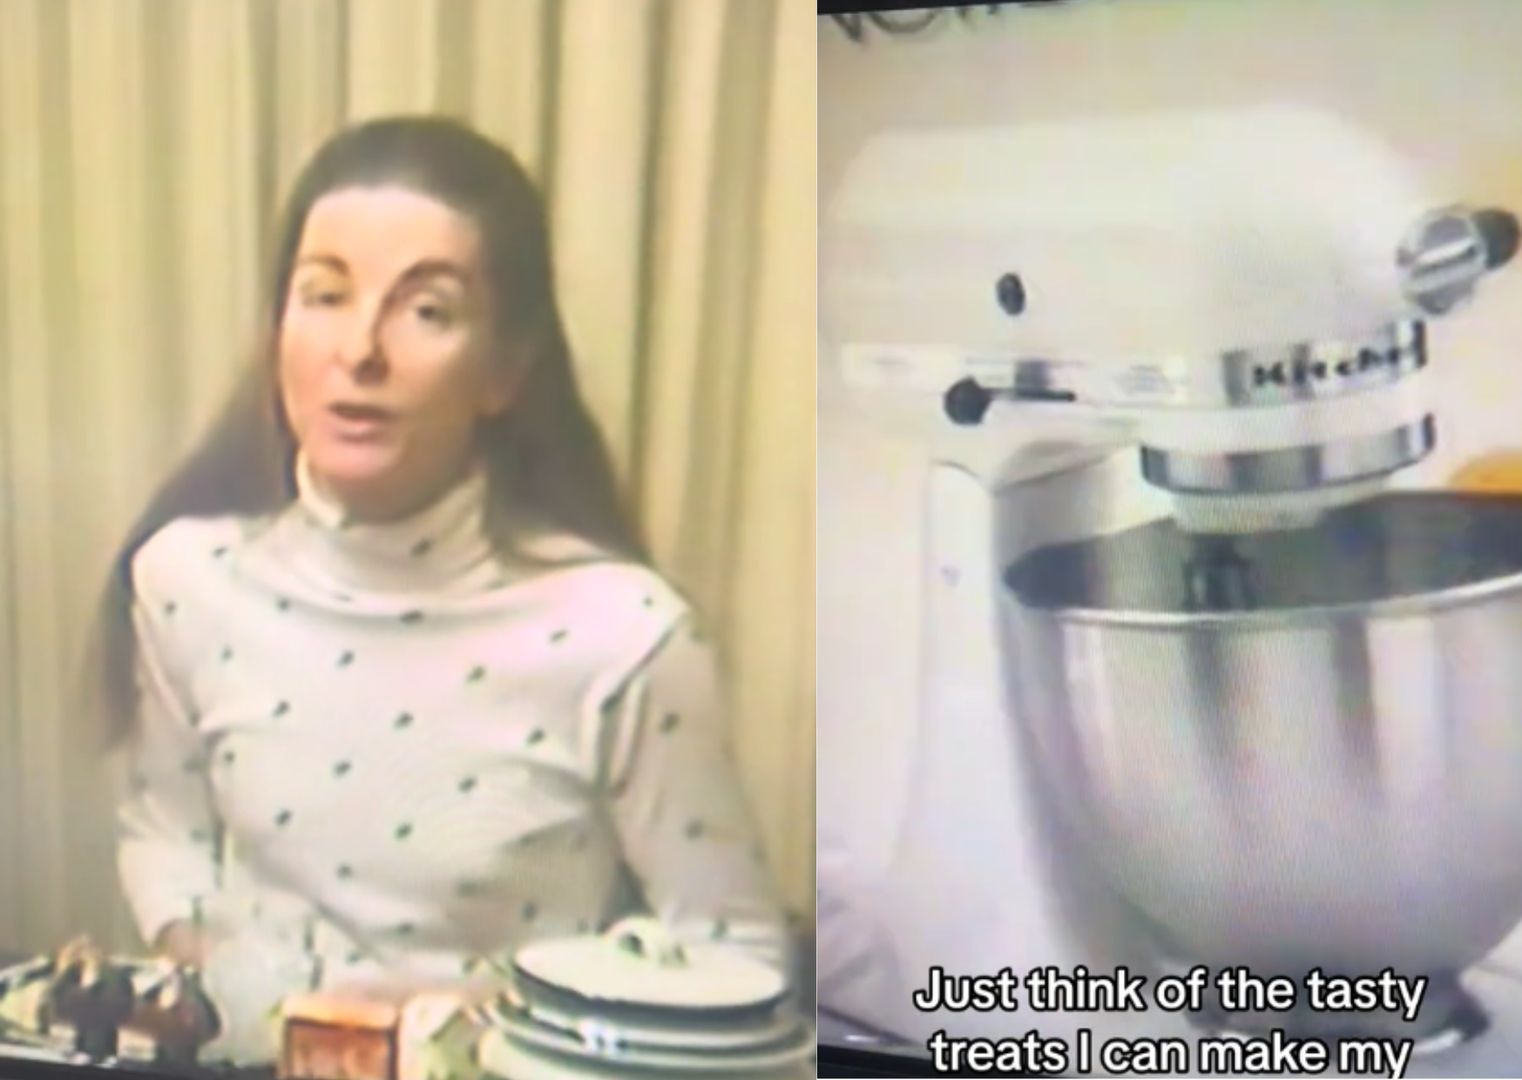 Rodzinne nagranie z lat 80. viralem. Pokazuje mamę, gdy otwiera prezent